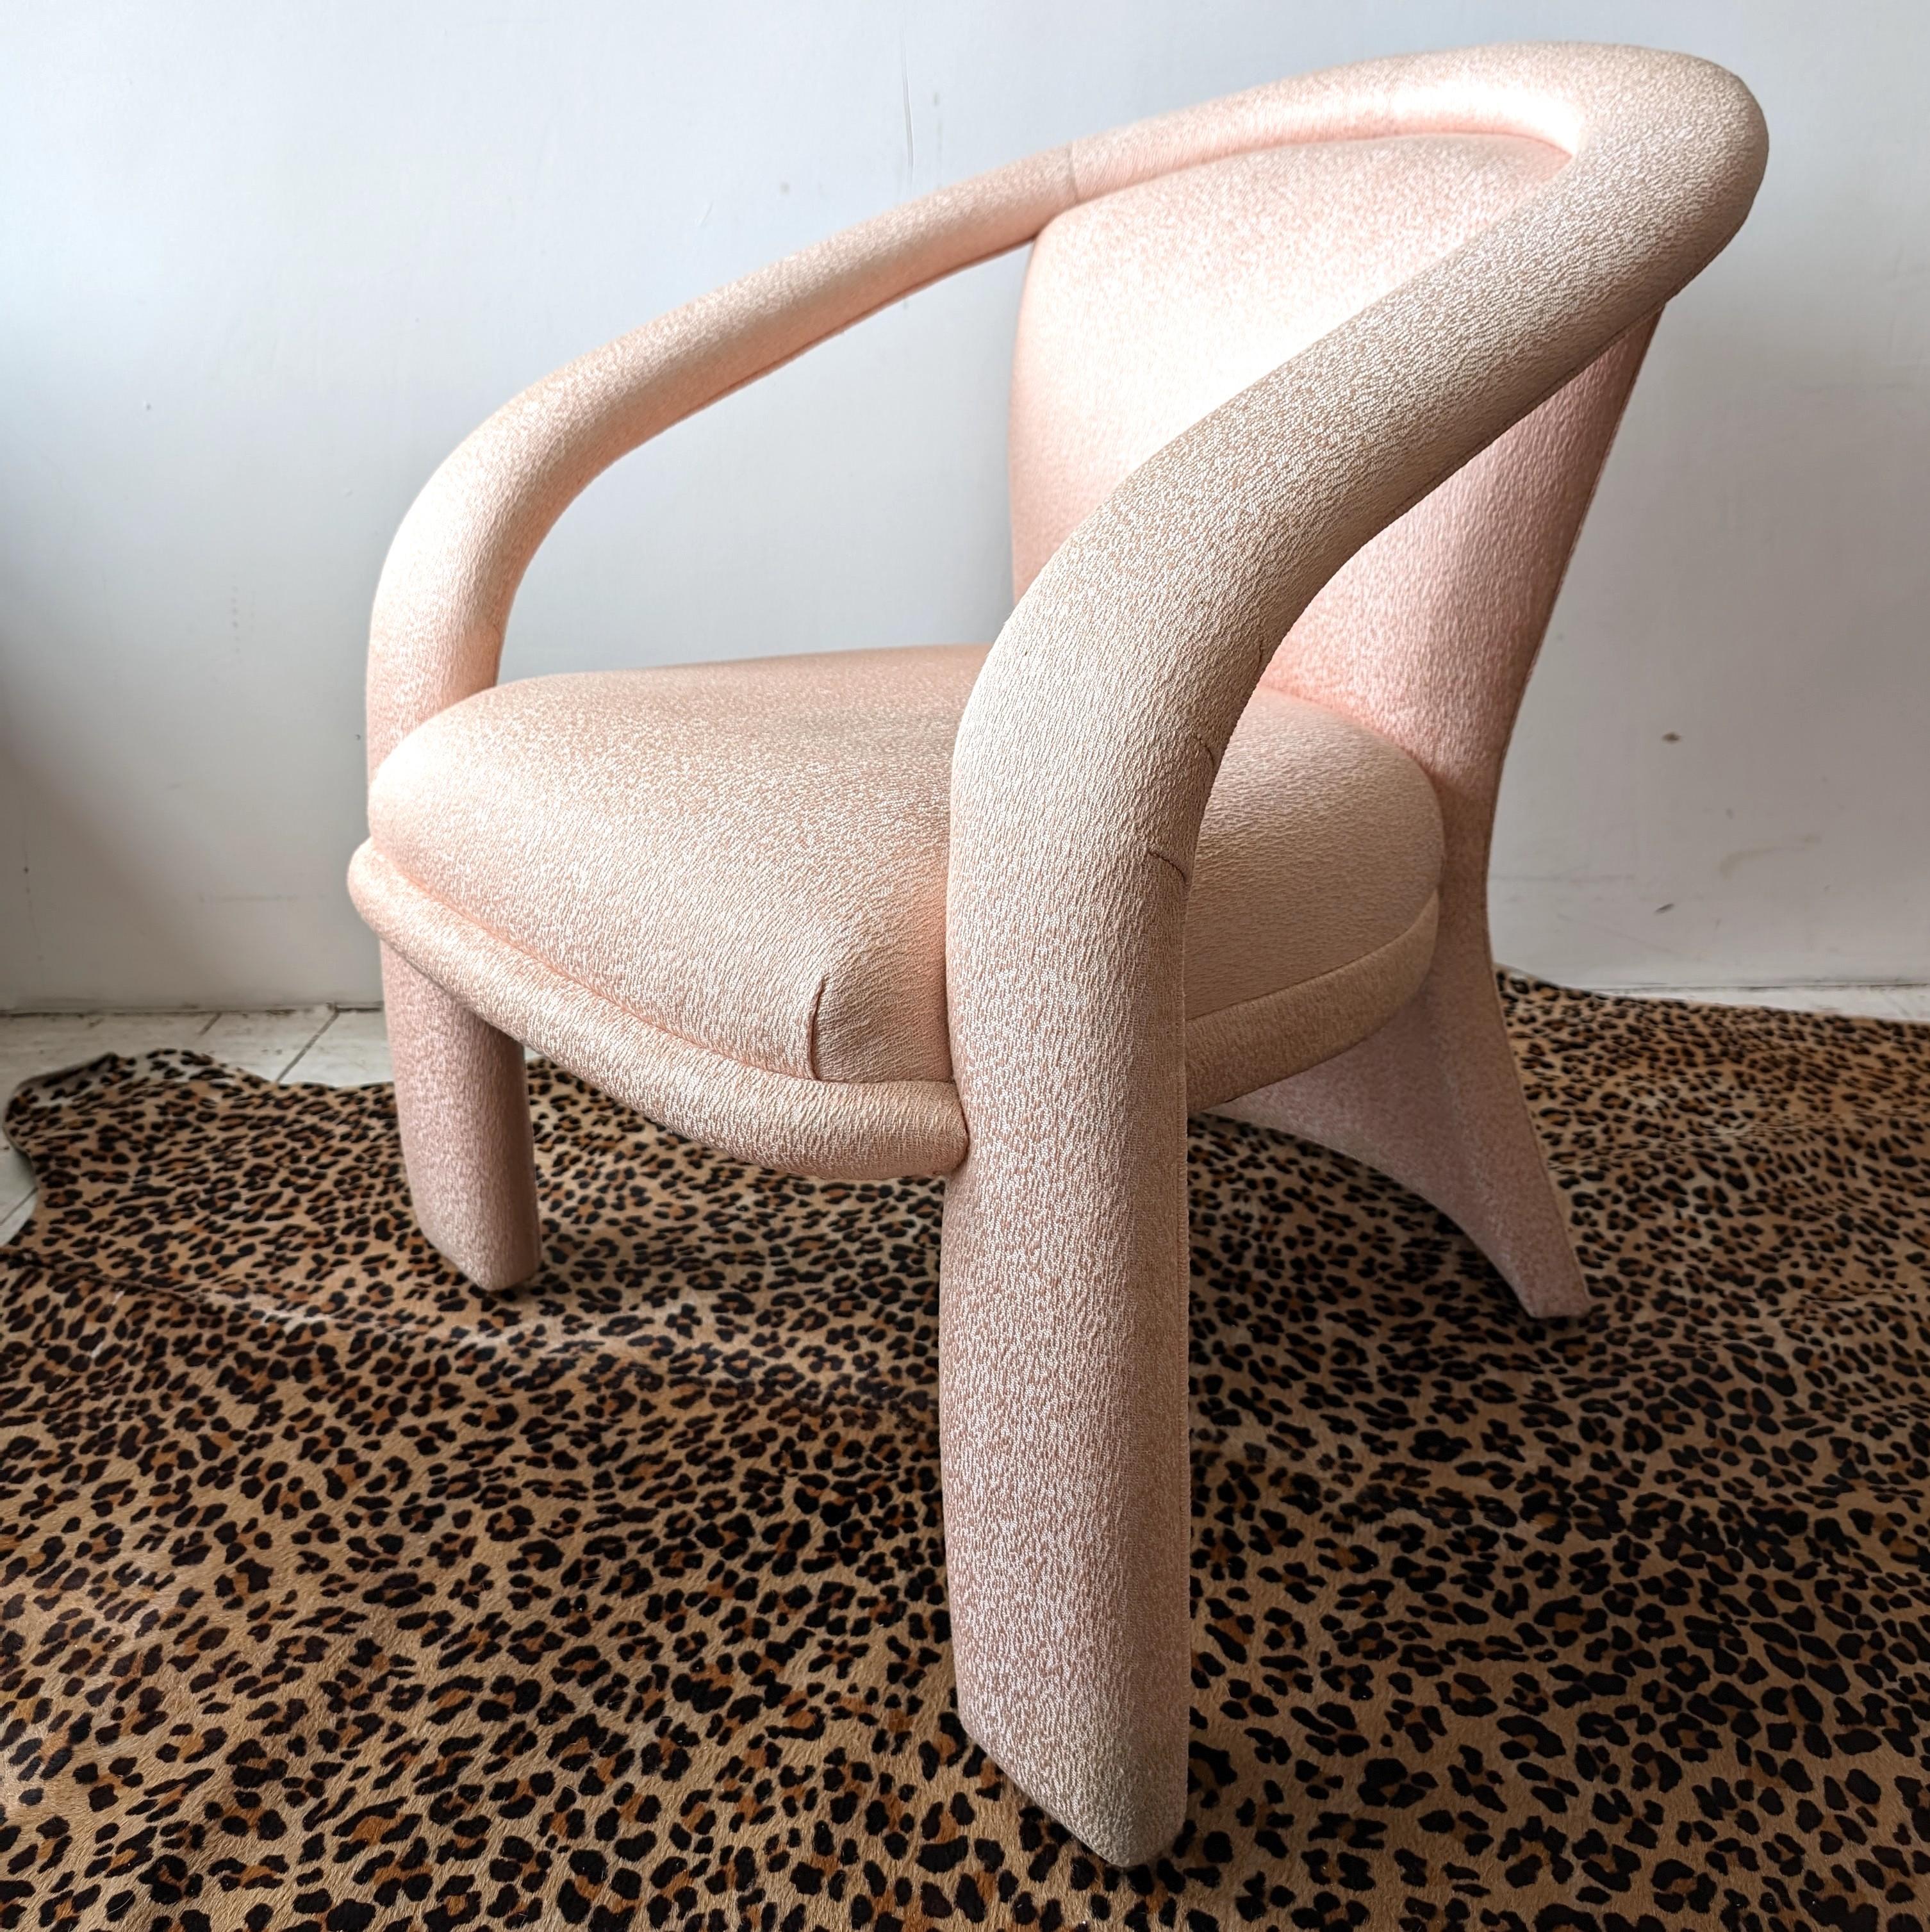  Ein skulpturaler postmoderner Loungesessel von Marge Carson für Carson Furniture, USA 1980er Jahre. Die originale blassrosa Polsterung ist in hervorragendem Zustand. Und trotz seines minimalistischen Aussehens ist der Stuhl äußerst bequem

Maße: